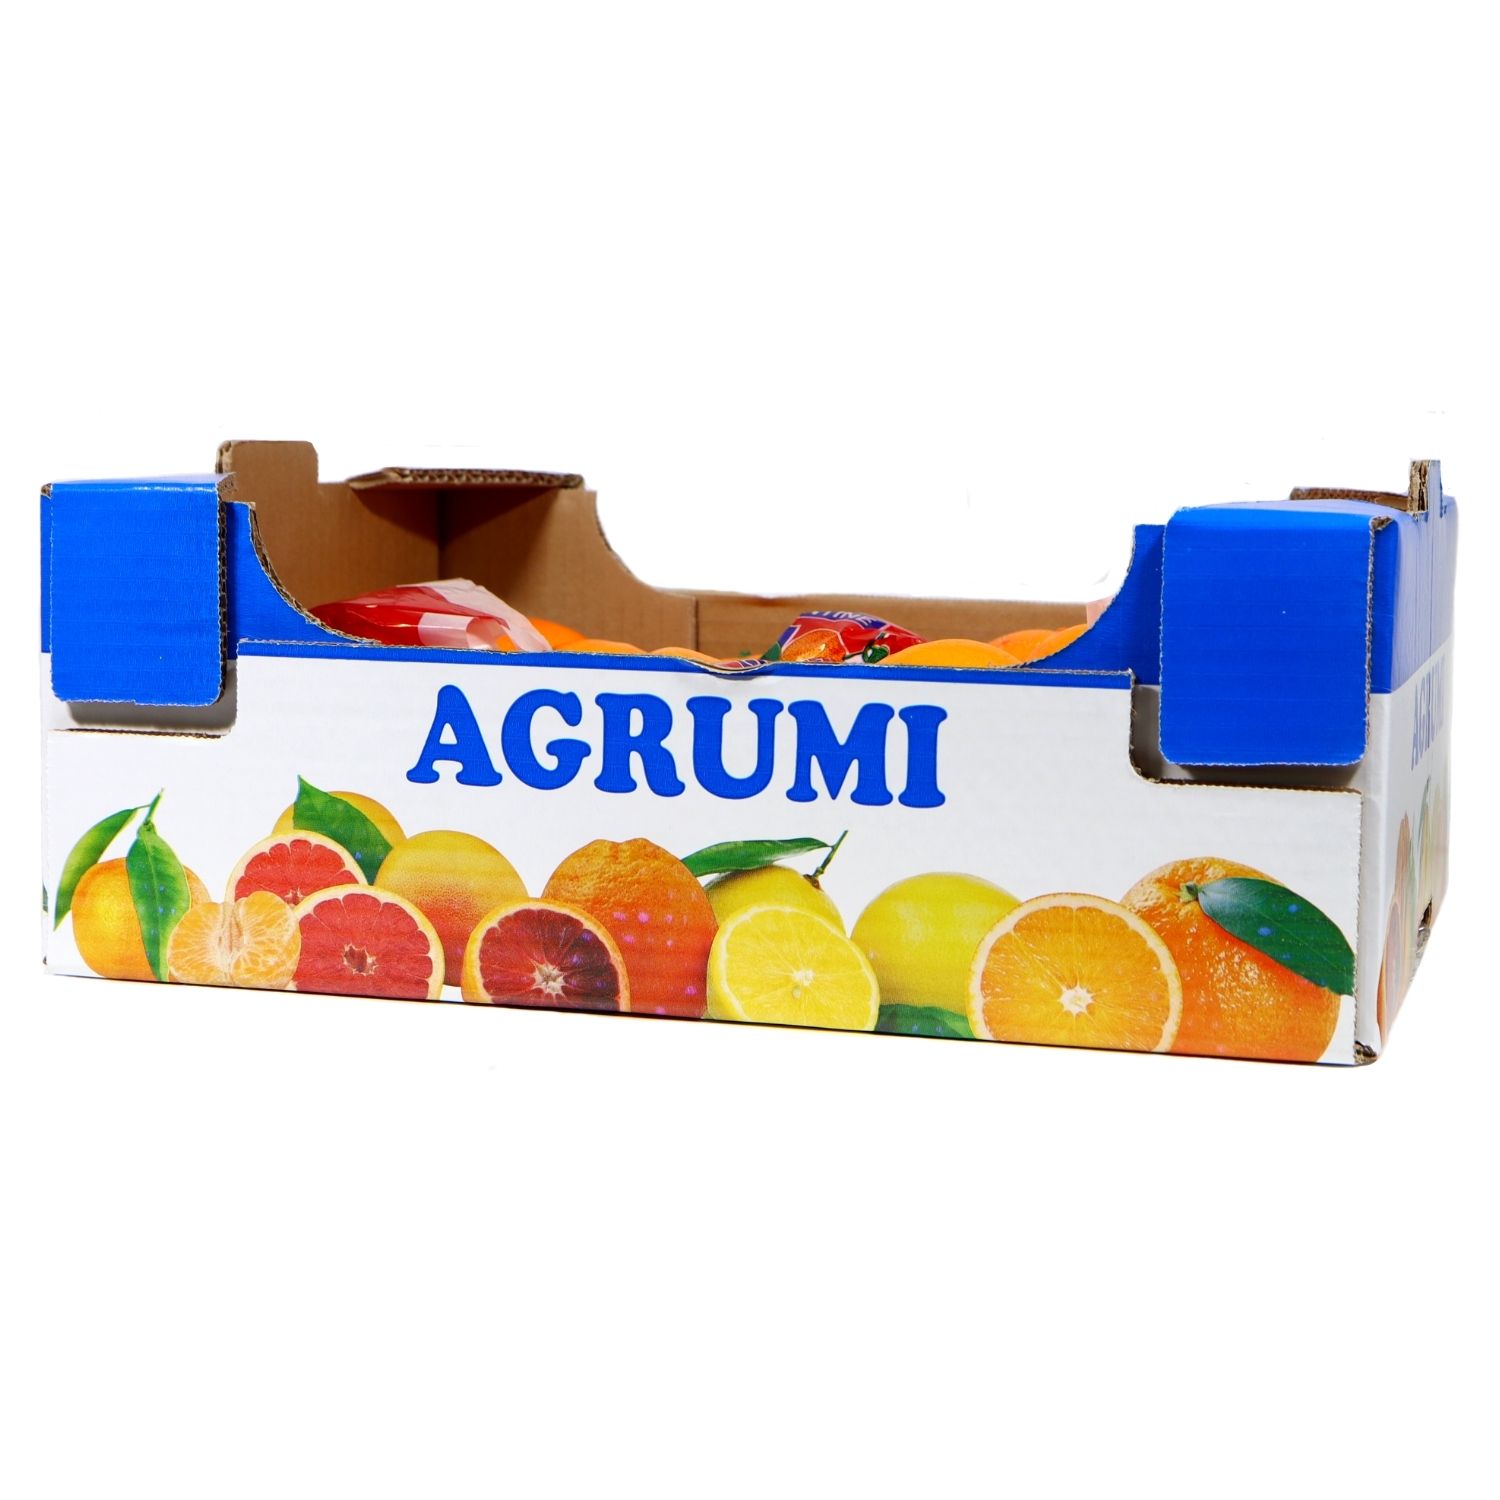 Cassetta in cartone Plaform stampa Agrumi multiuso ortofrutta per agricoltura 551258_1